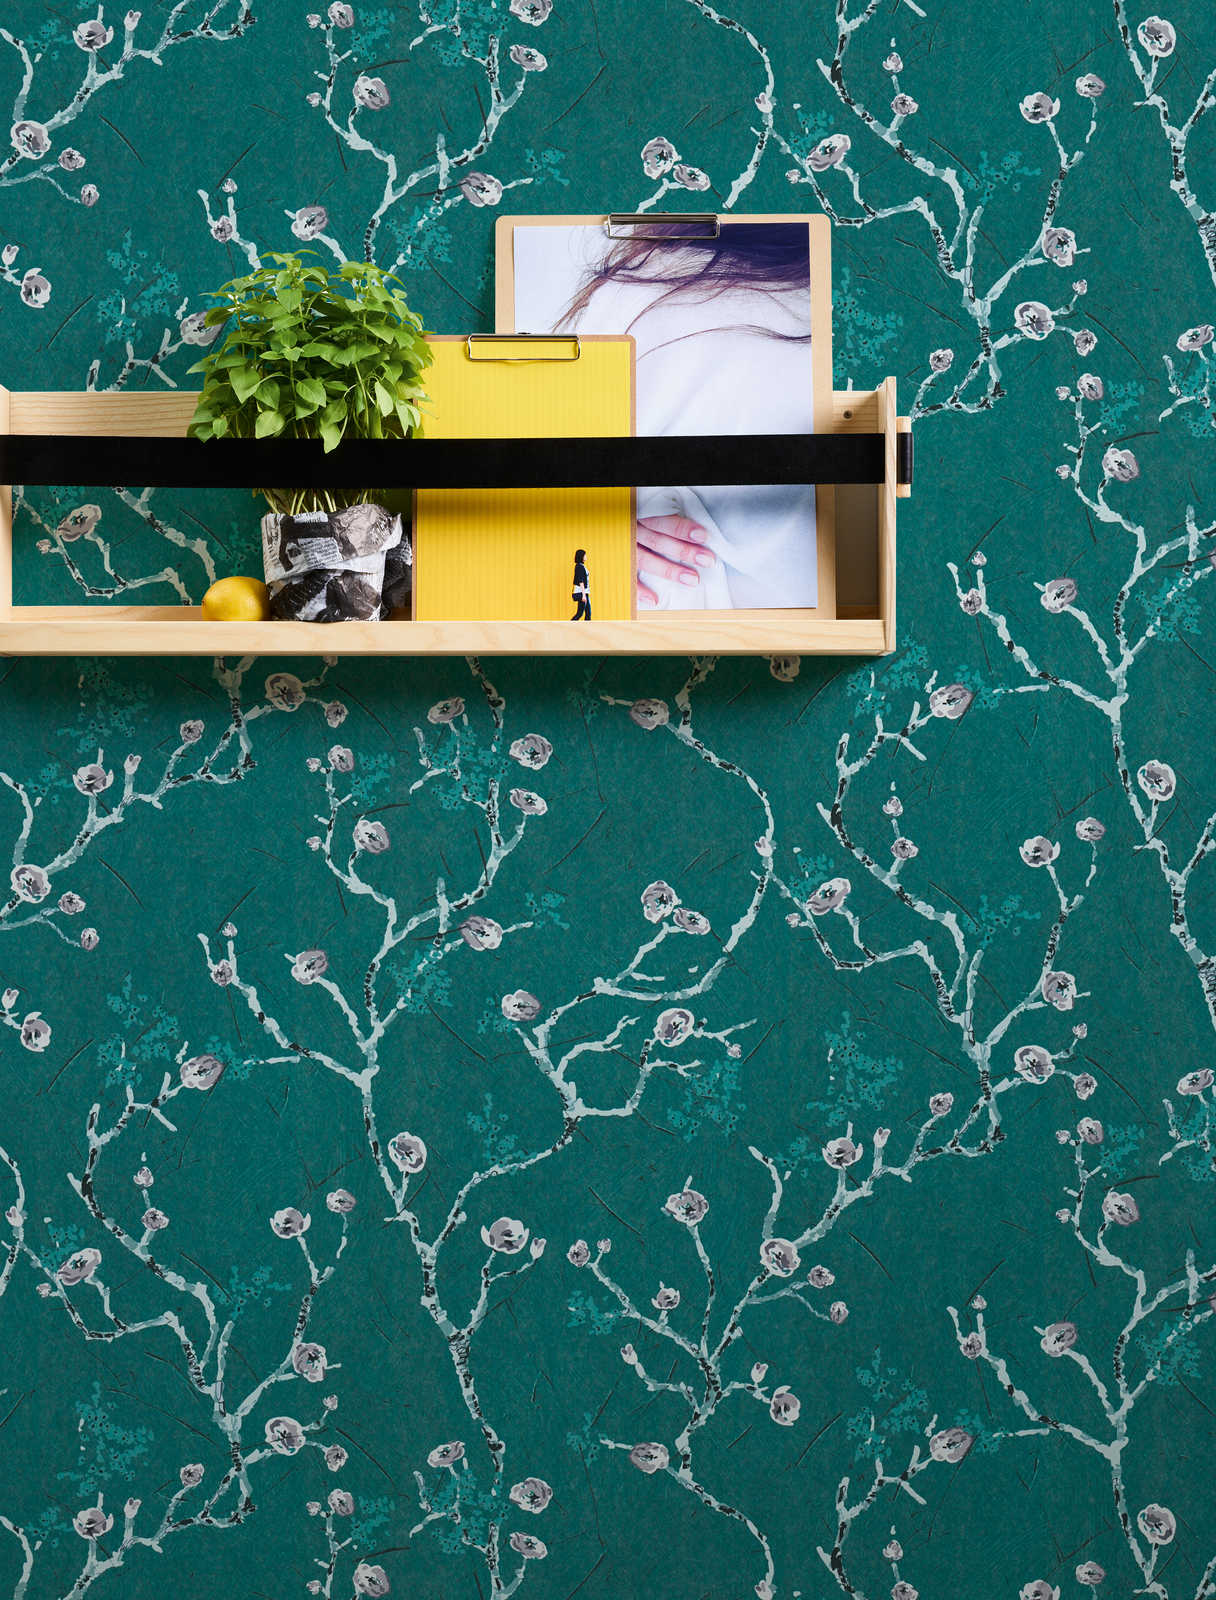             Donkergroen behang met bloemmotief in Aziatische stijl
        